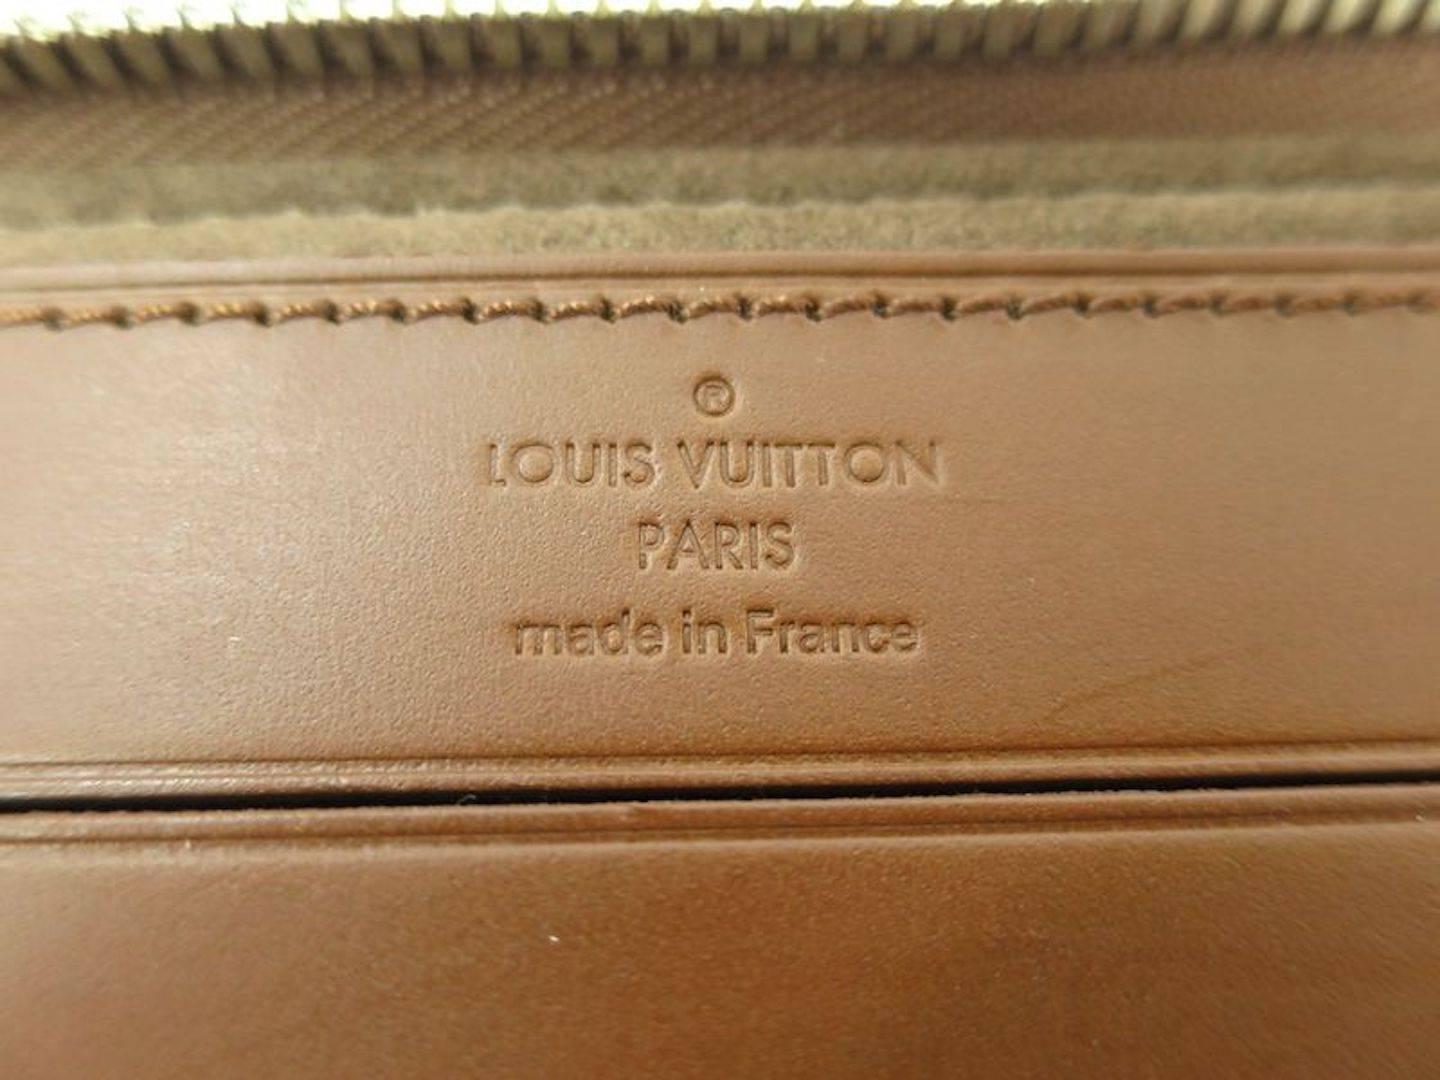 Louis Vuitton Cognac Leather Silver Men's Travel Attache Tech Business Case Bag 1